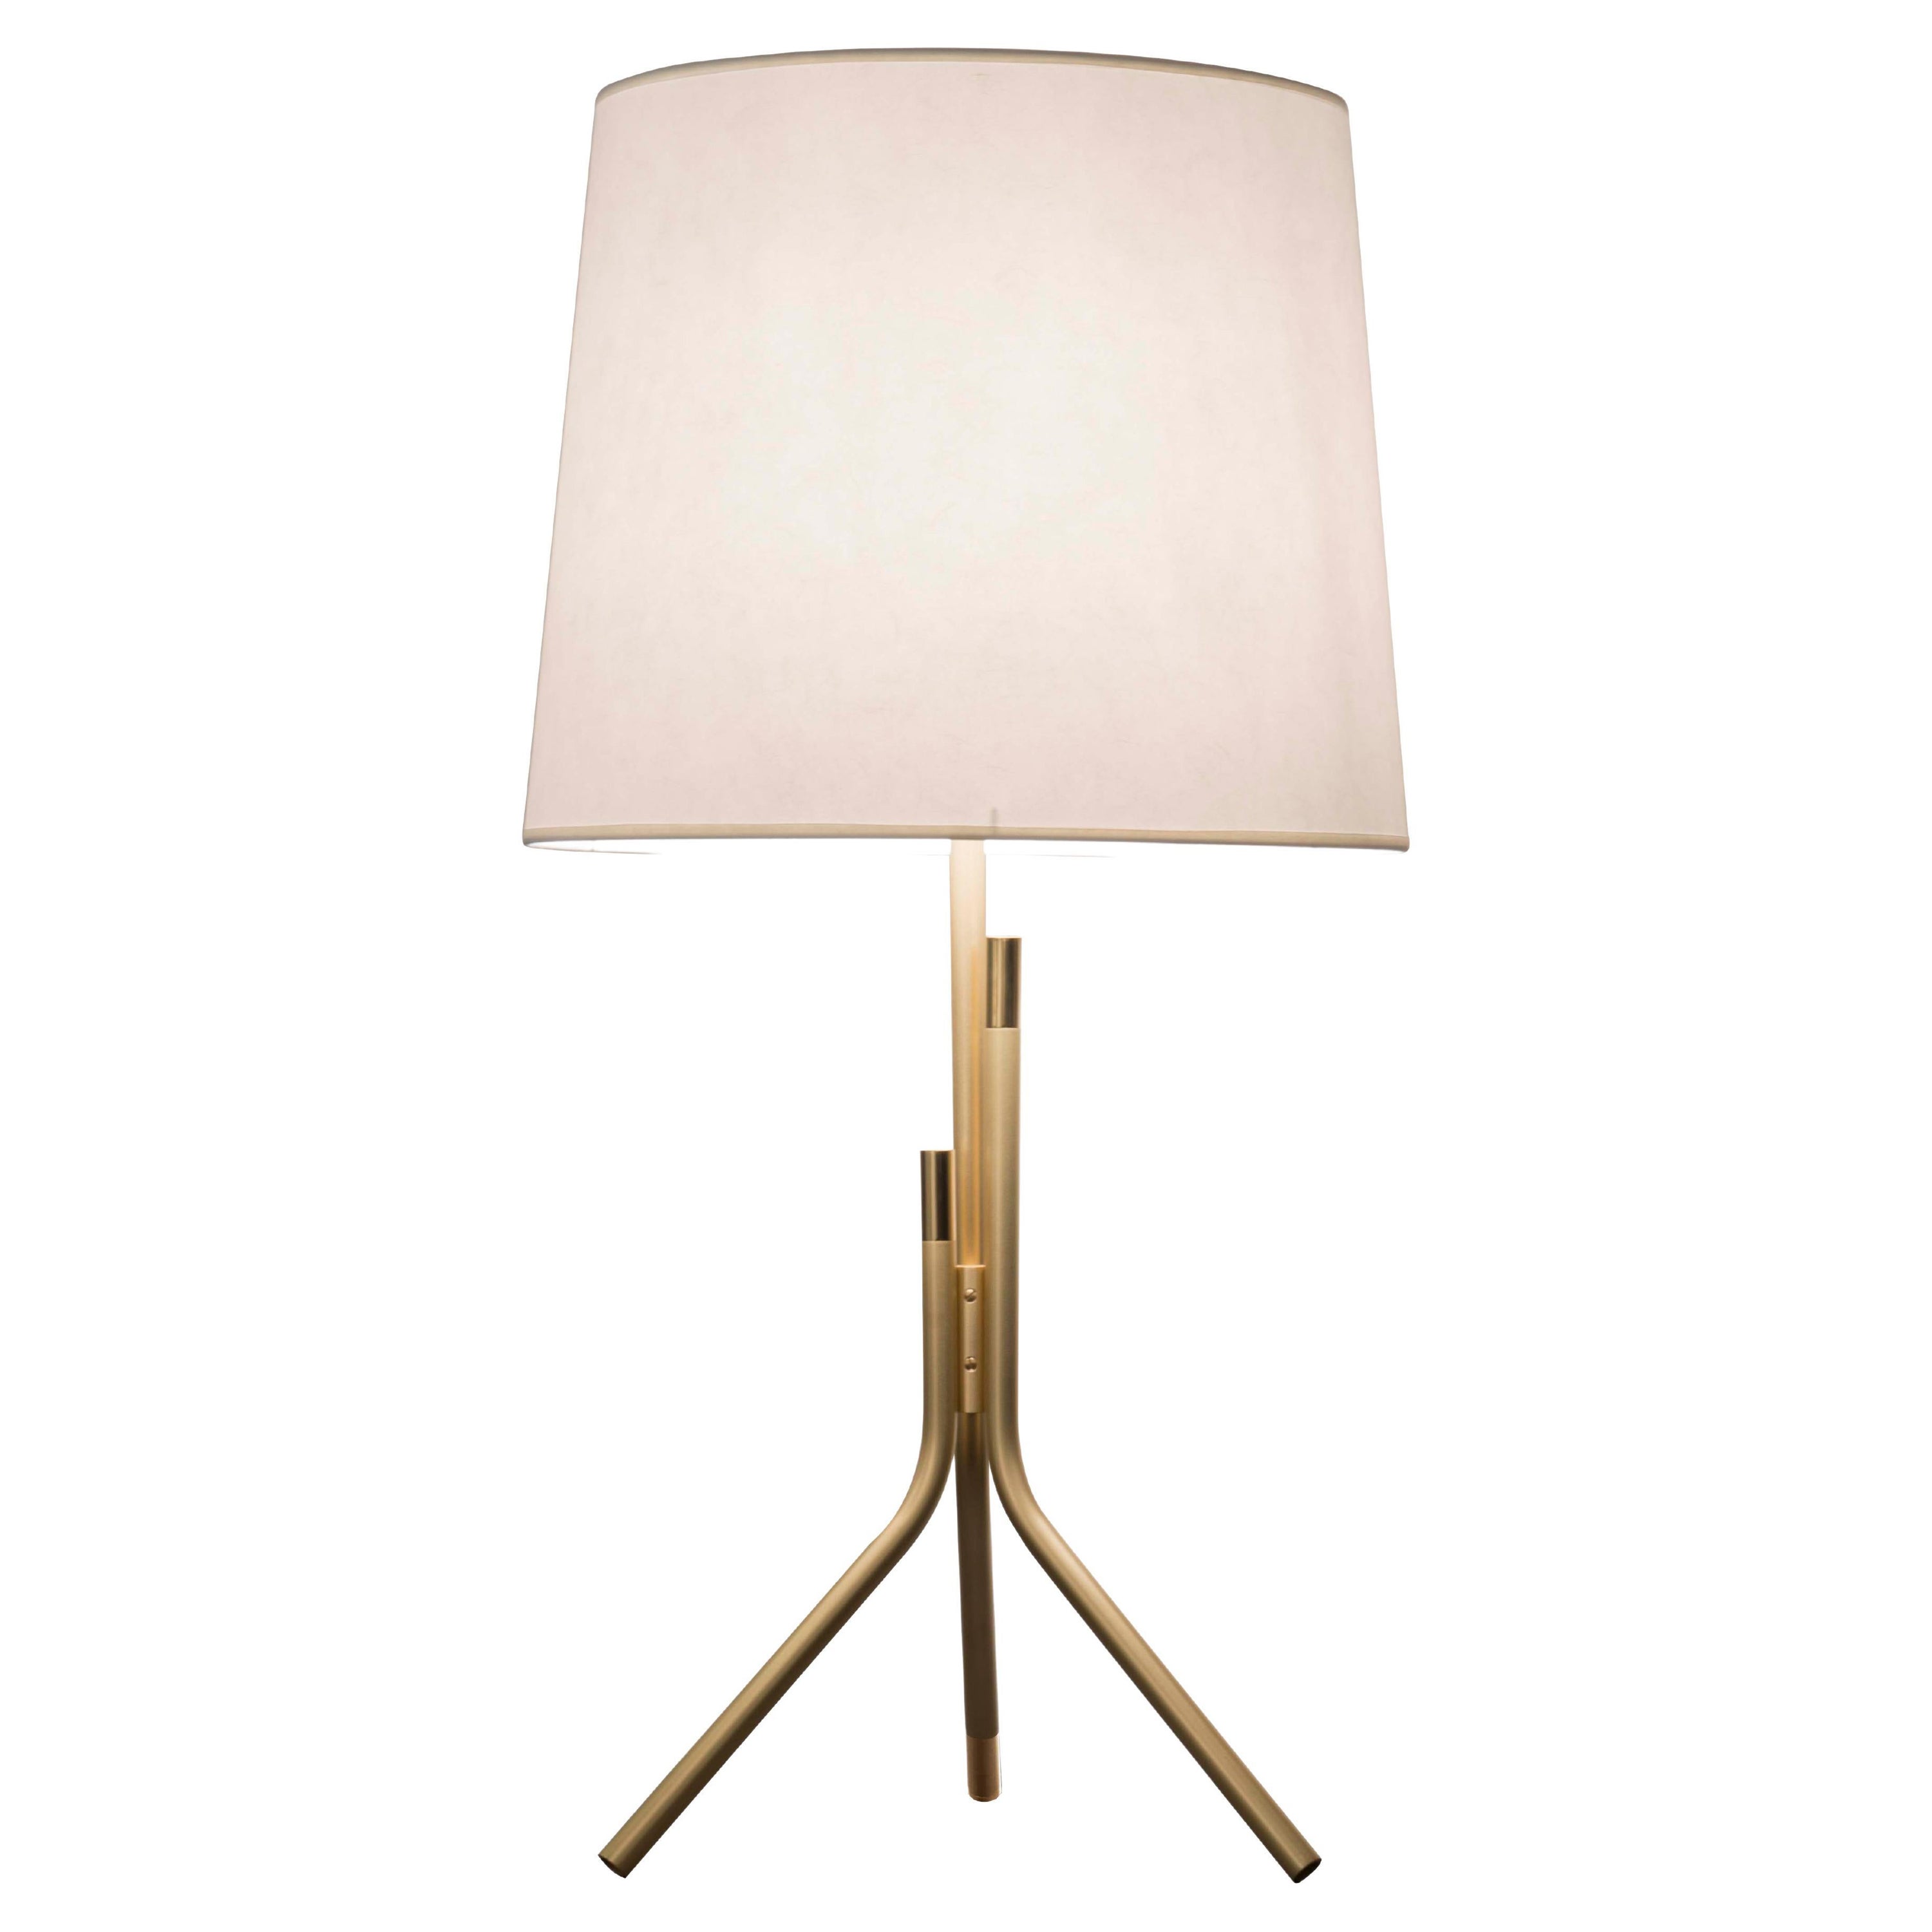 Ellis Table Lamp by Hervé Langlais For Sale